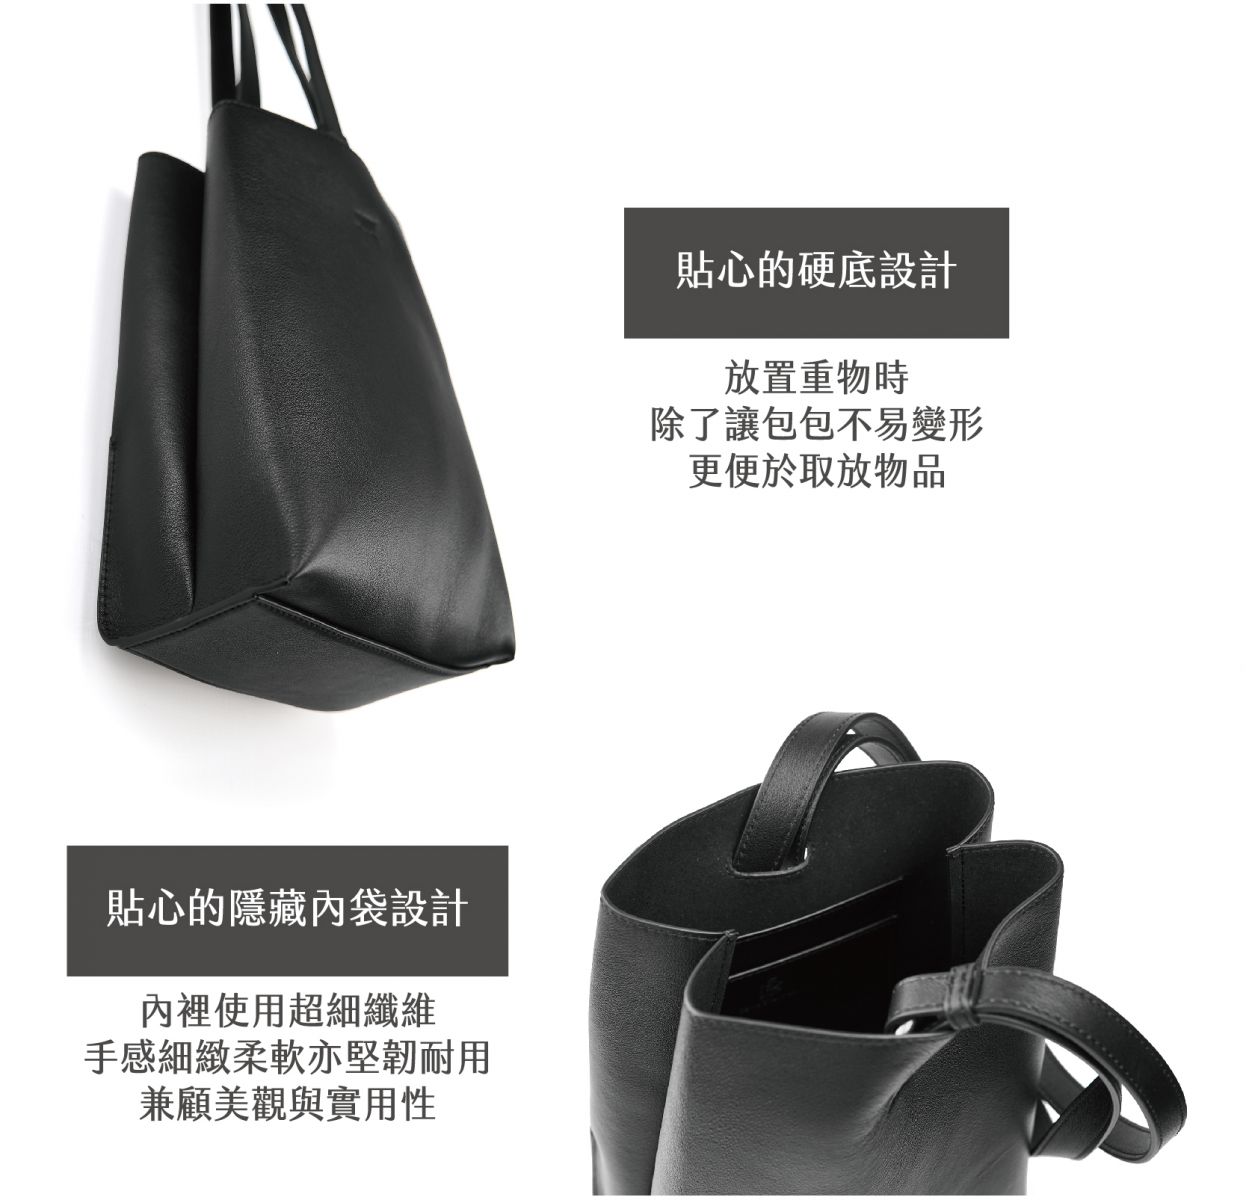 DTB-Half Rectangular Backpack 迷你兩用方形水桶後背包-黑色